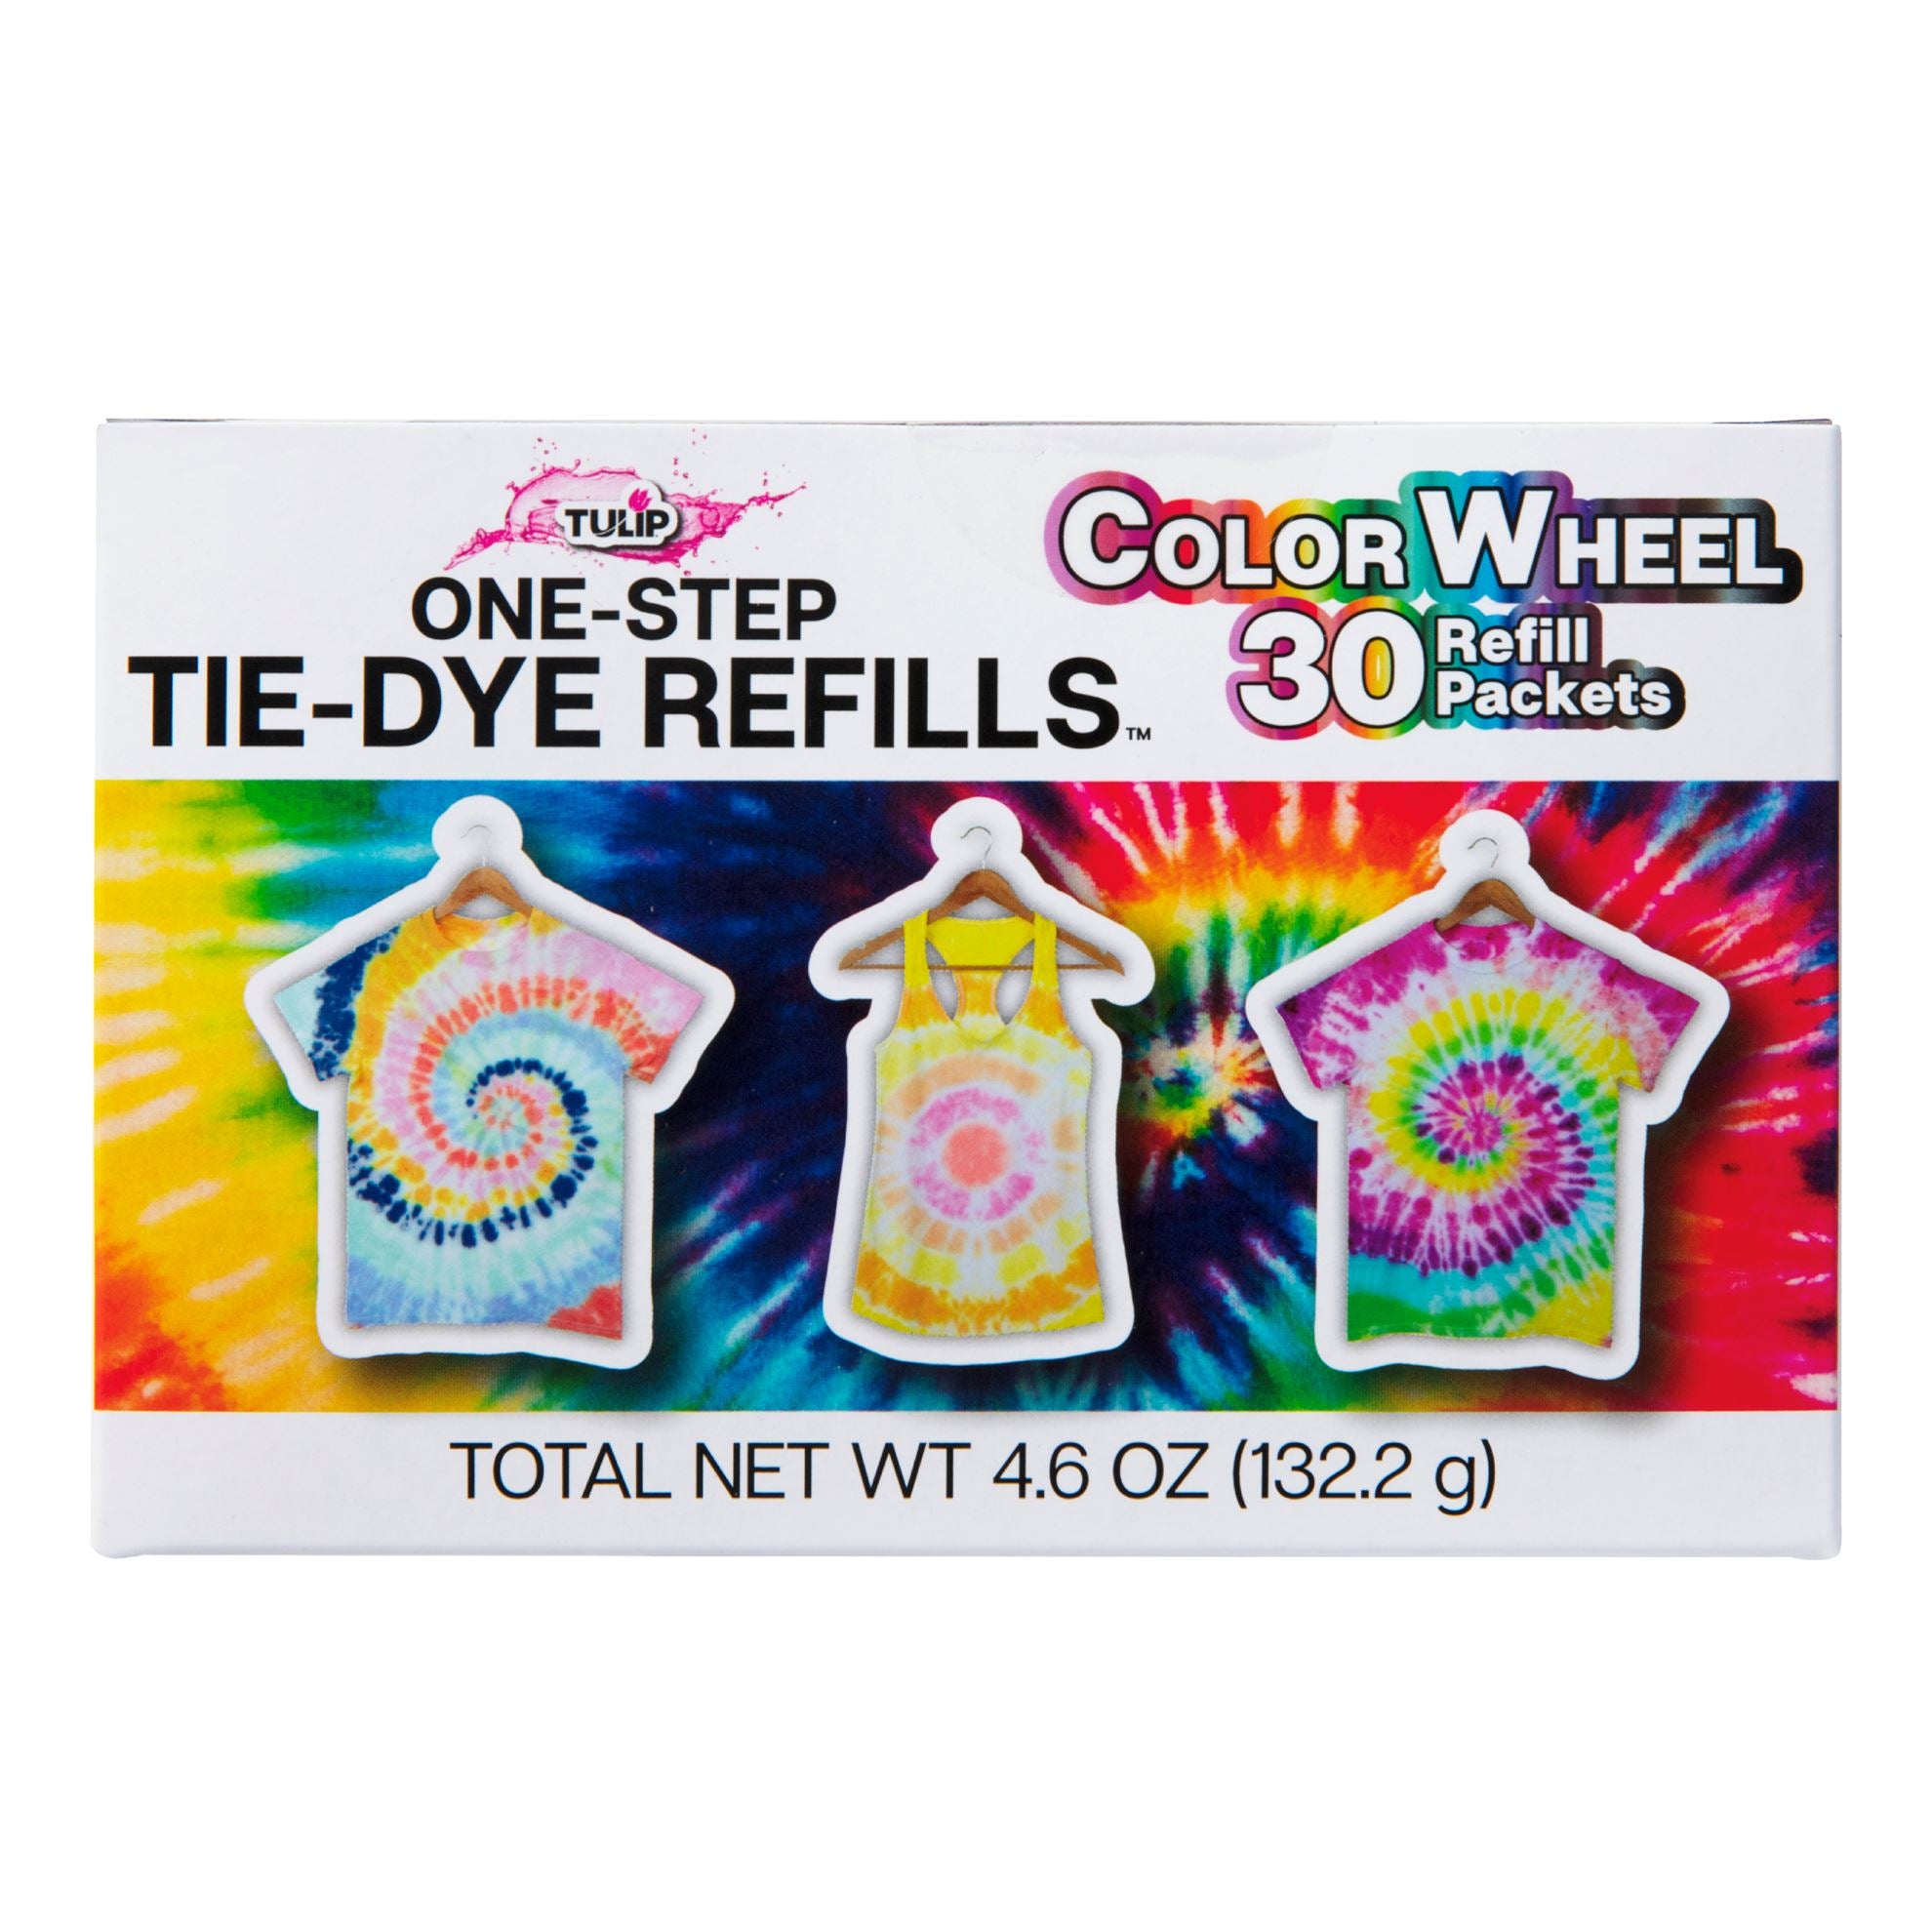 Tulip Tie-Dye Refills Color Wheel 30 Pack - 1